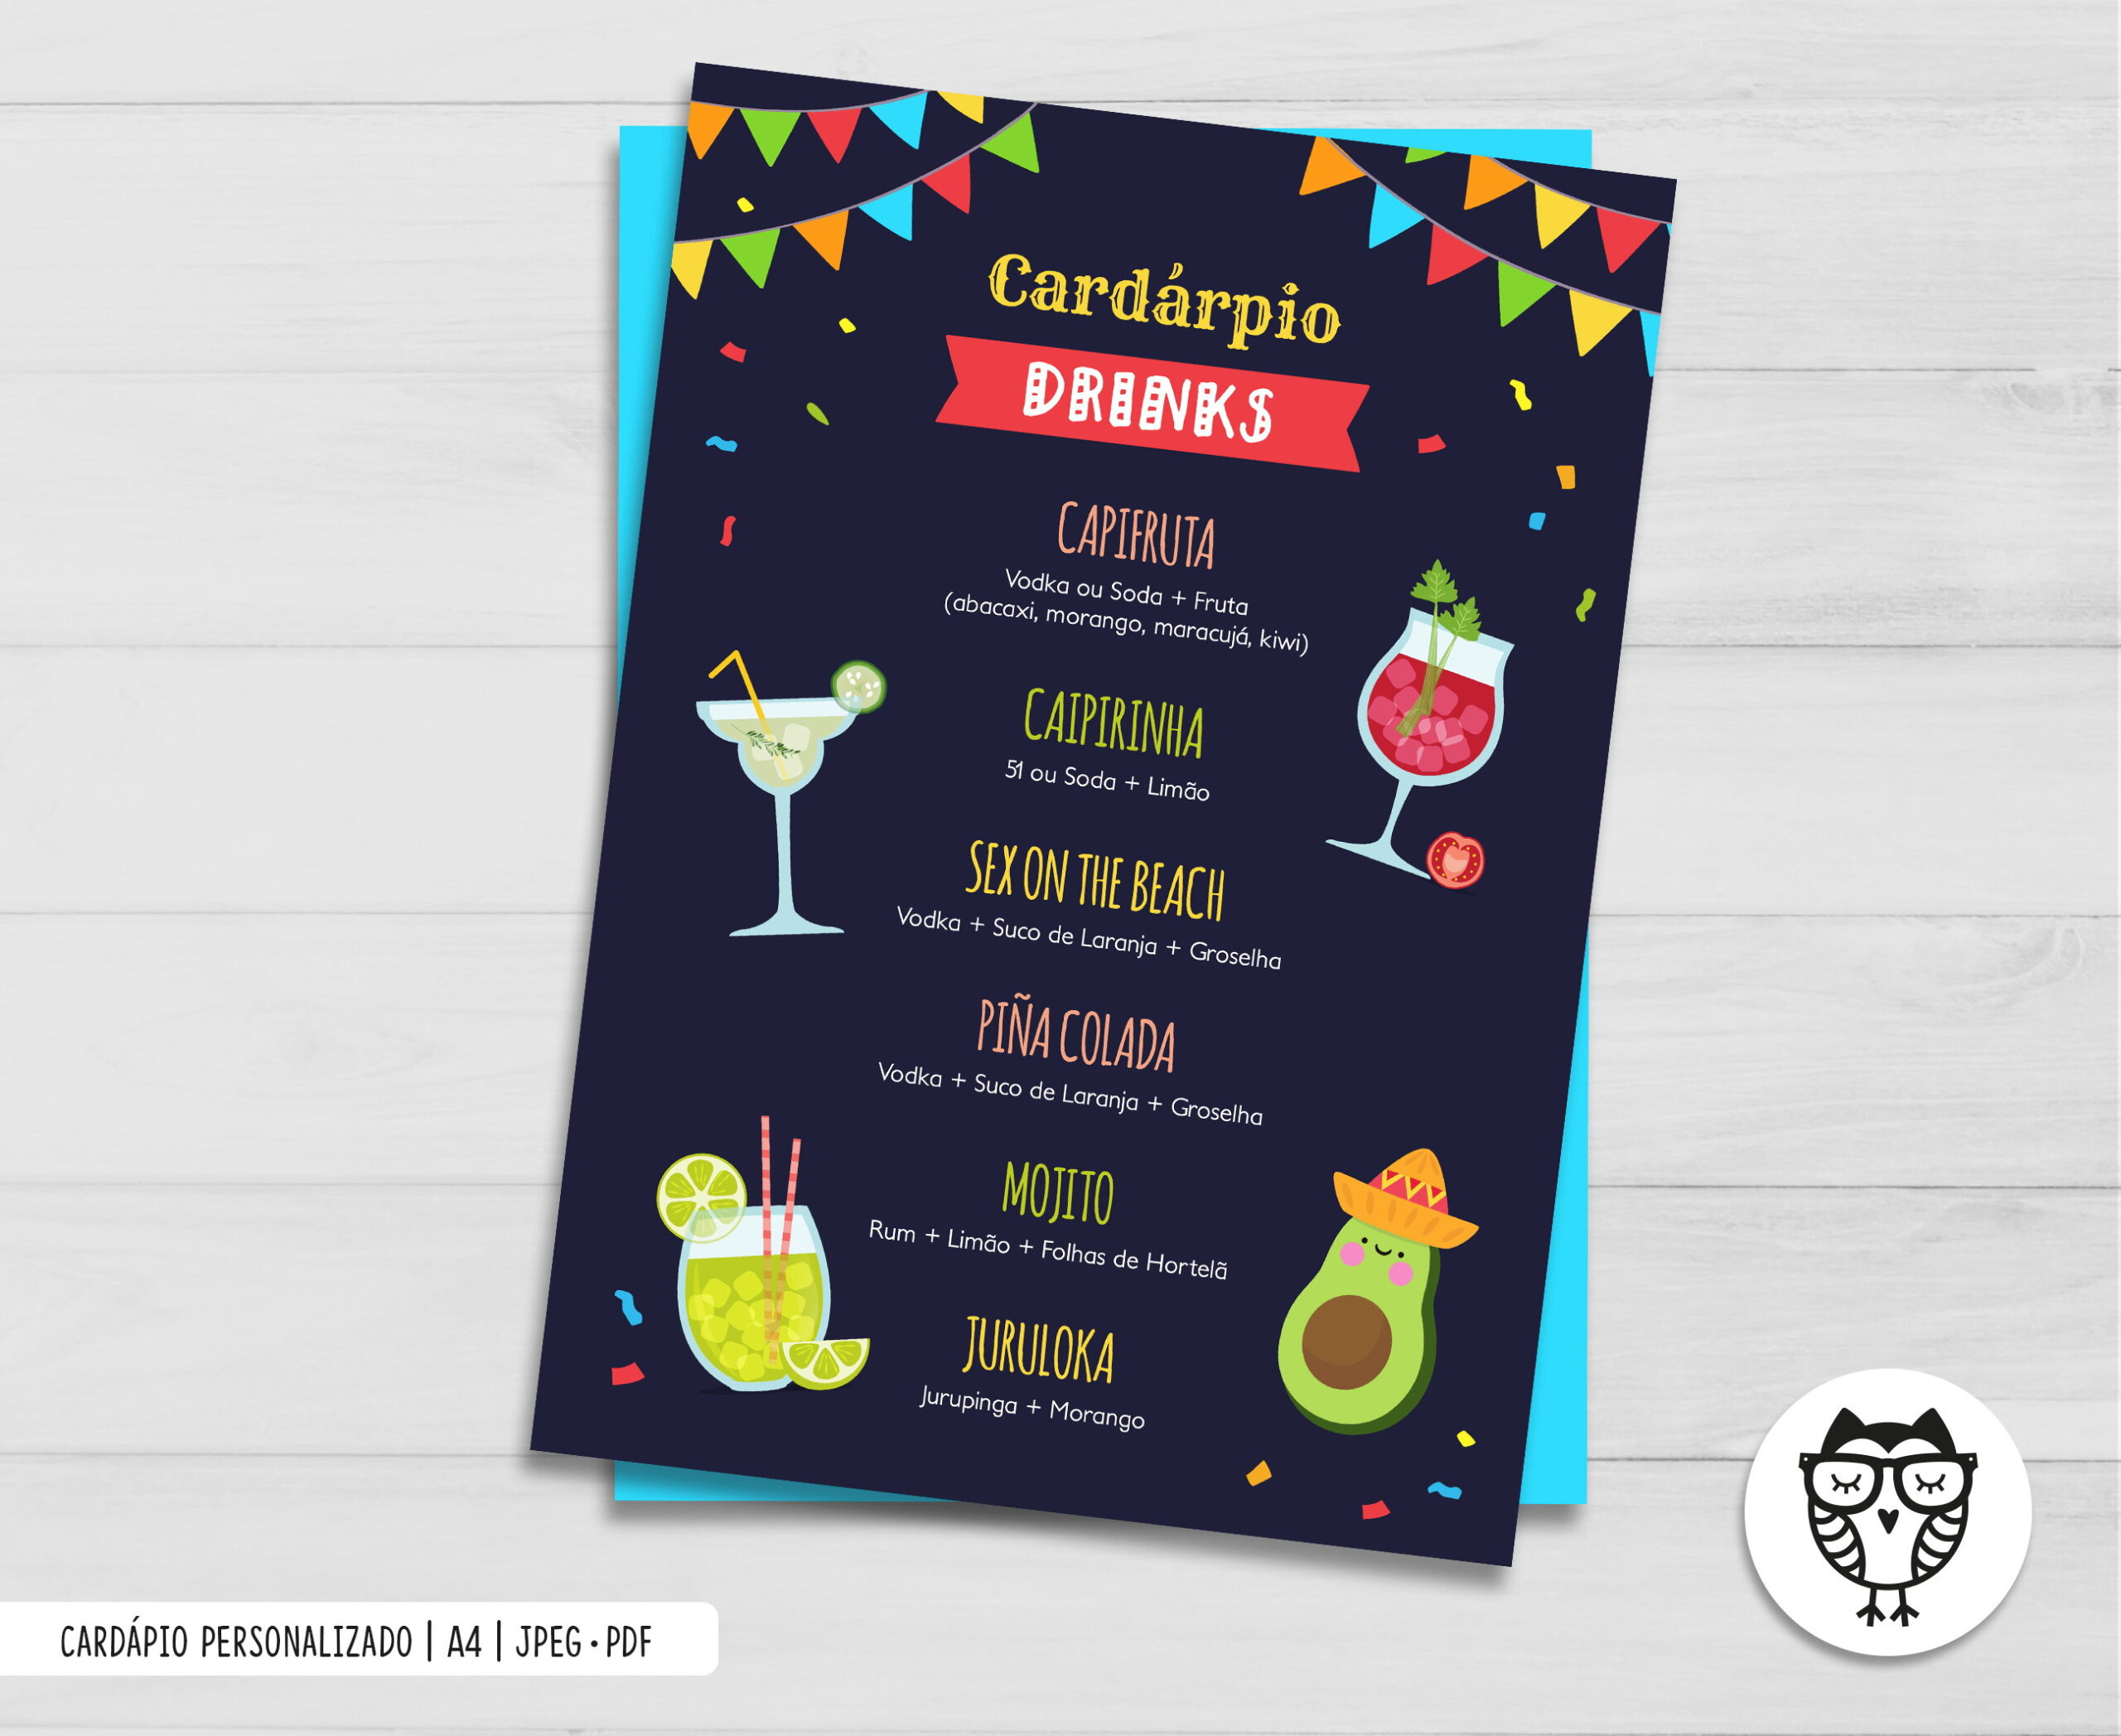 Cardápio Drinks Festa Mexicana no Elo7 | Coisas da Eli (D1900A) - cardapio de drinks